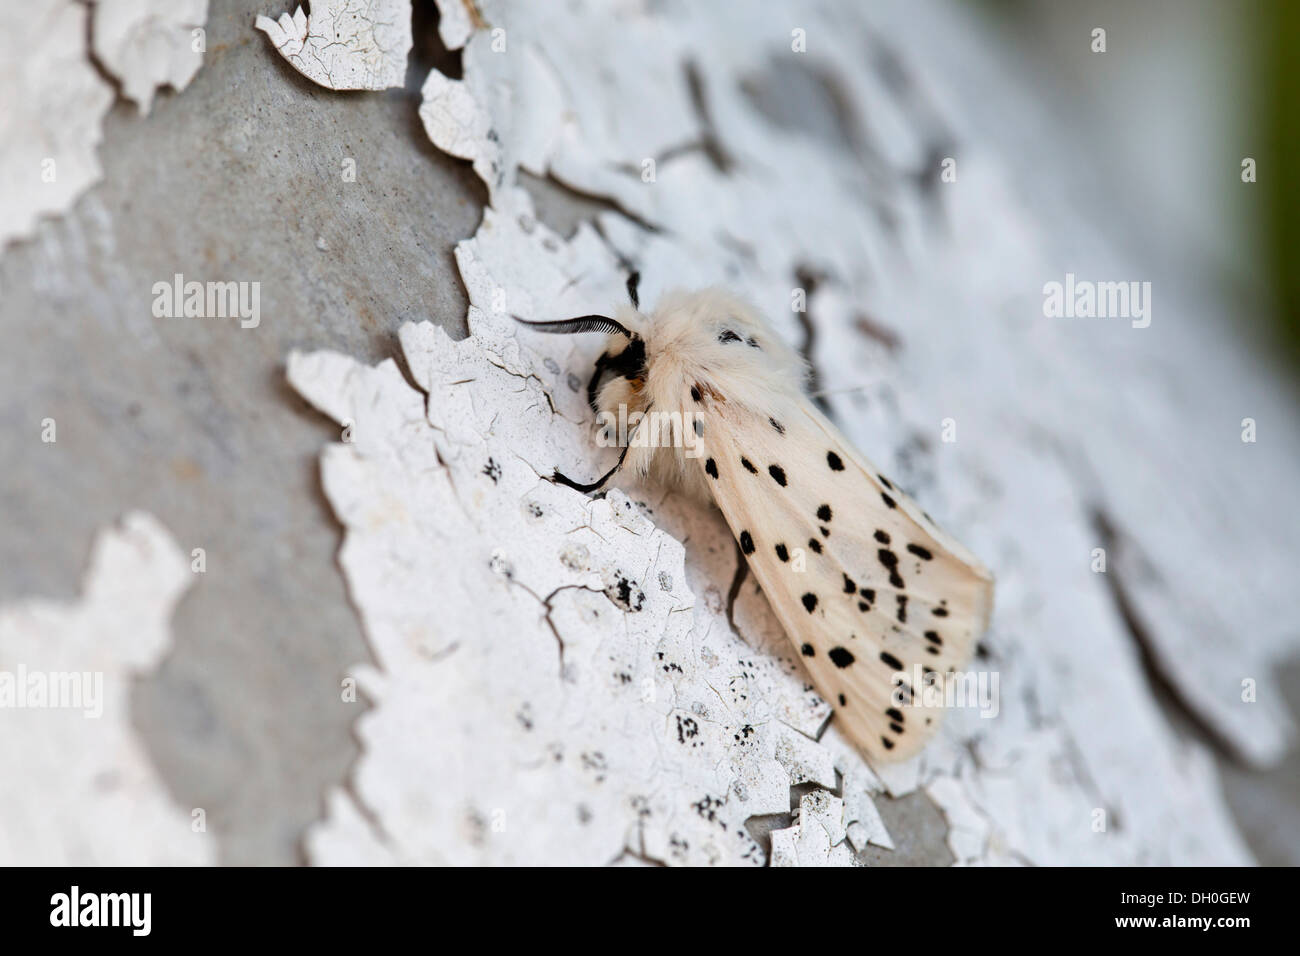 Hyponomeute du pommier blanc ; Spilosoma lubricipeda ; mâle ; sur l'écaillage de la peinture ; UK Banque D'Images